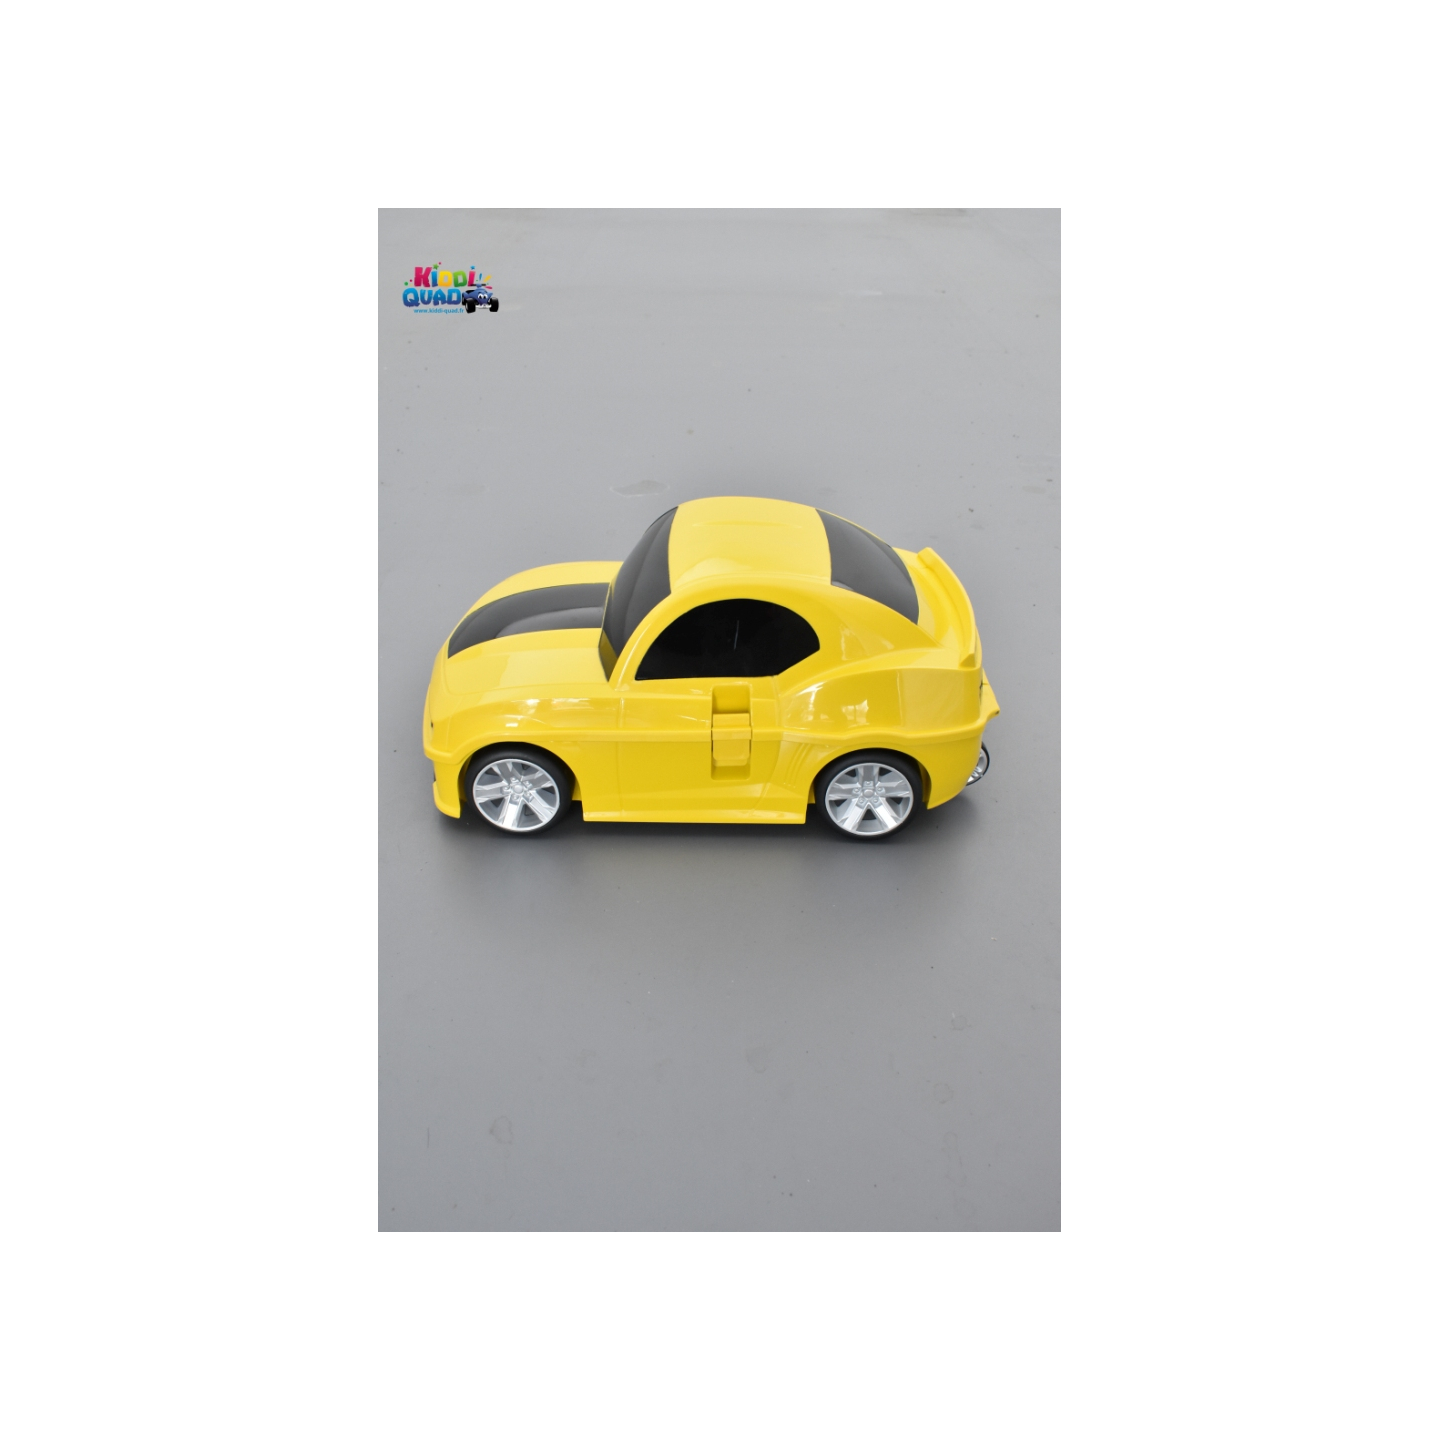 https://kiddi-quad.fr/18294-product_hd/valise-voiture-enfant-muscle-car-jaune-valisette-forme-voiture-bebe.jpg